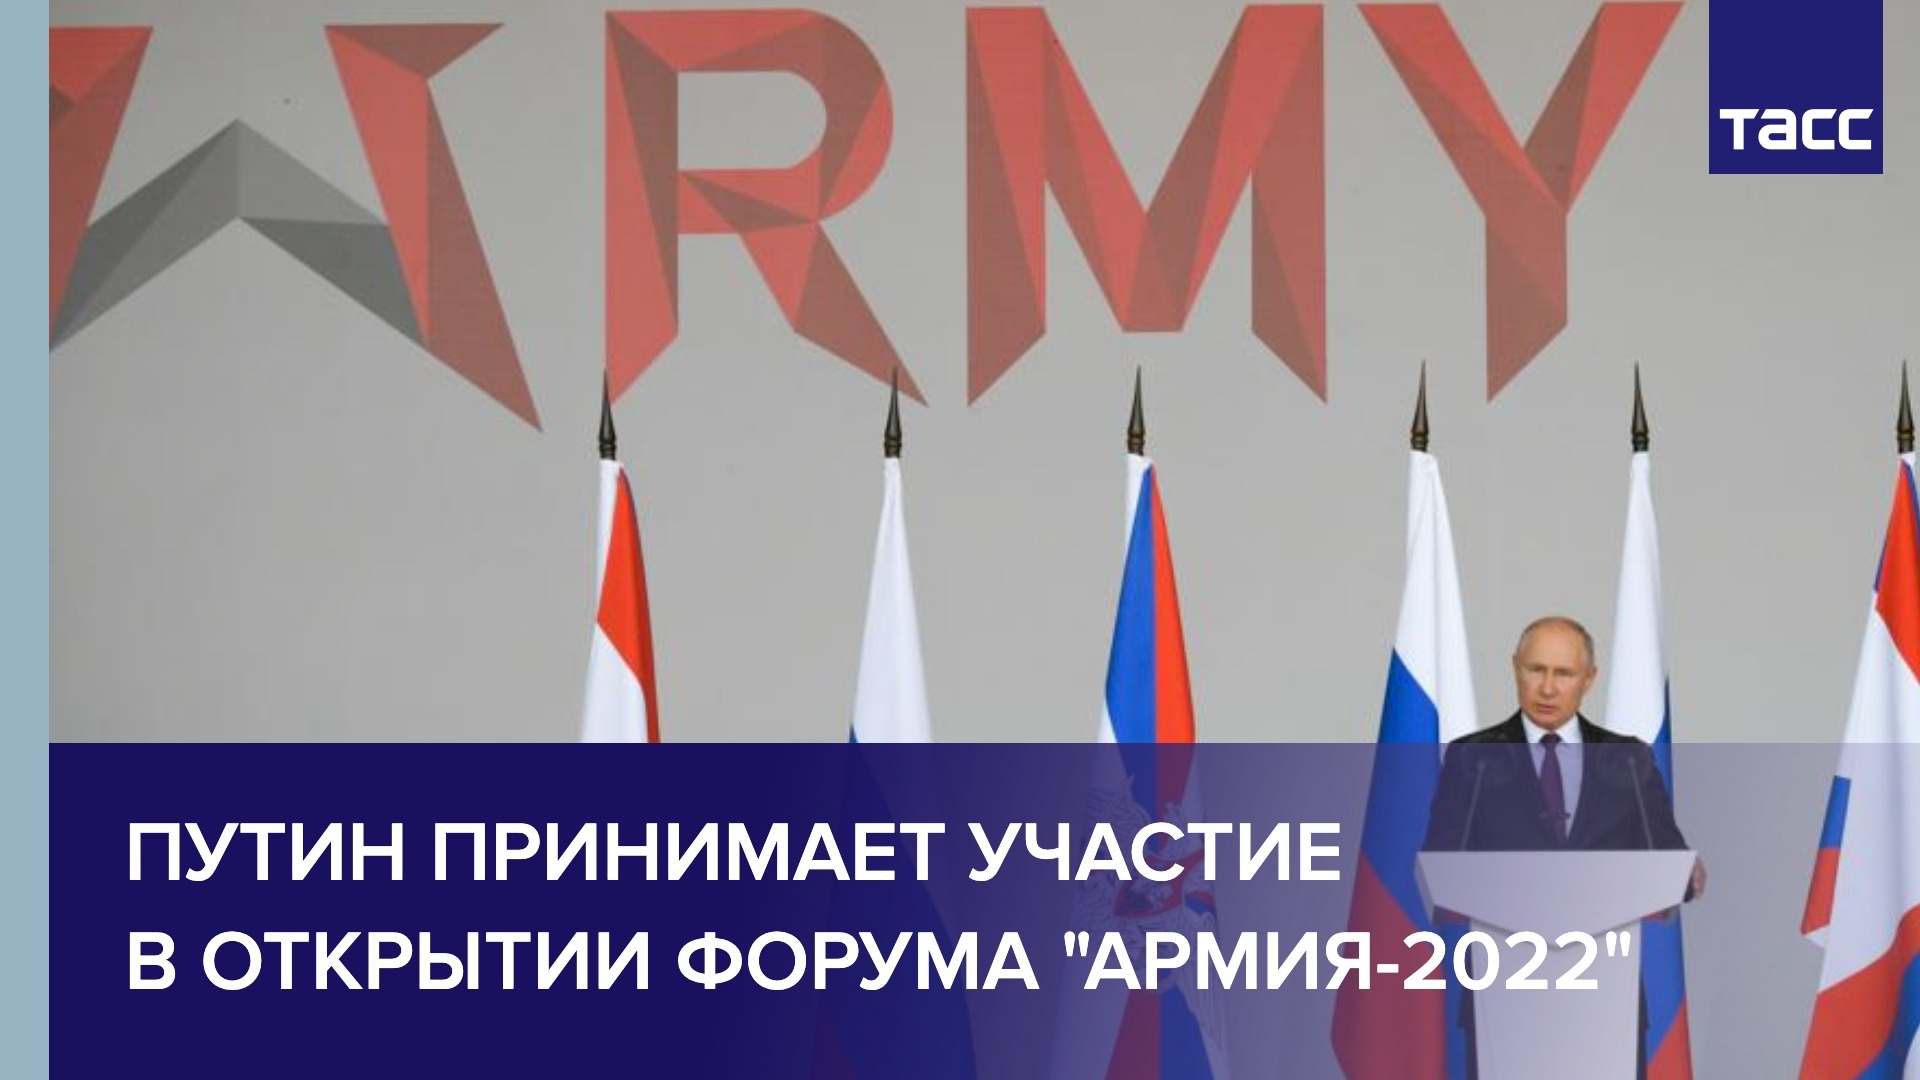 Путин принимает участие в открытии форума "Армия-2022"